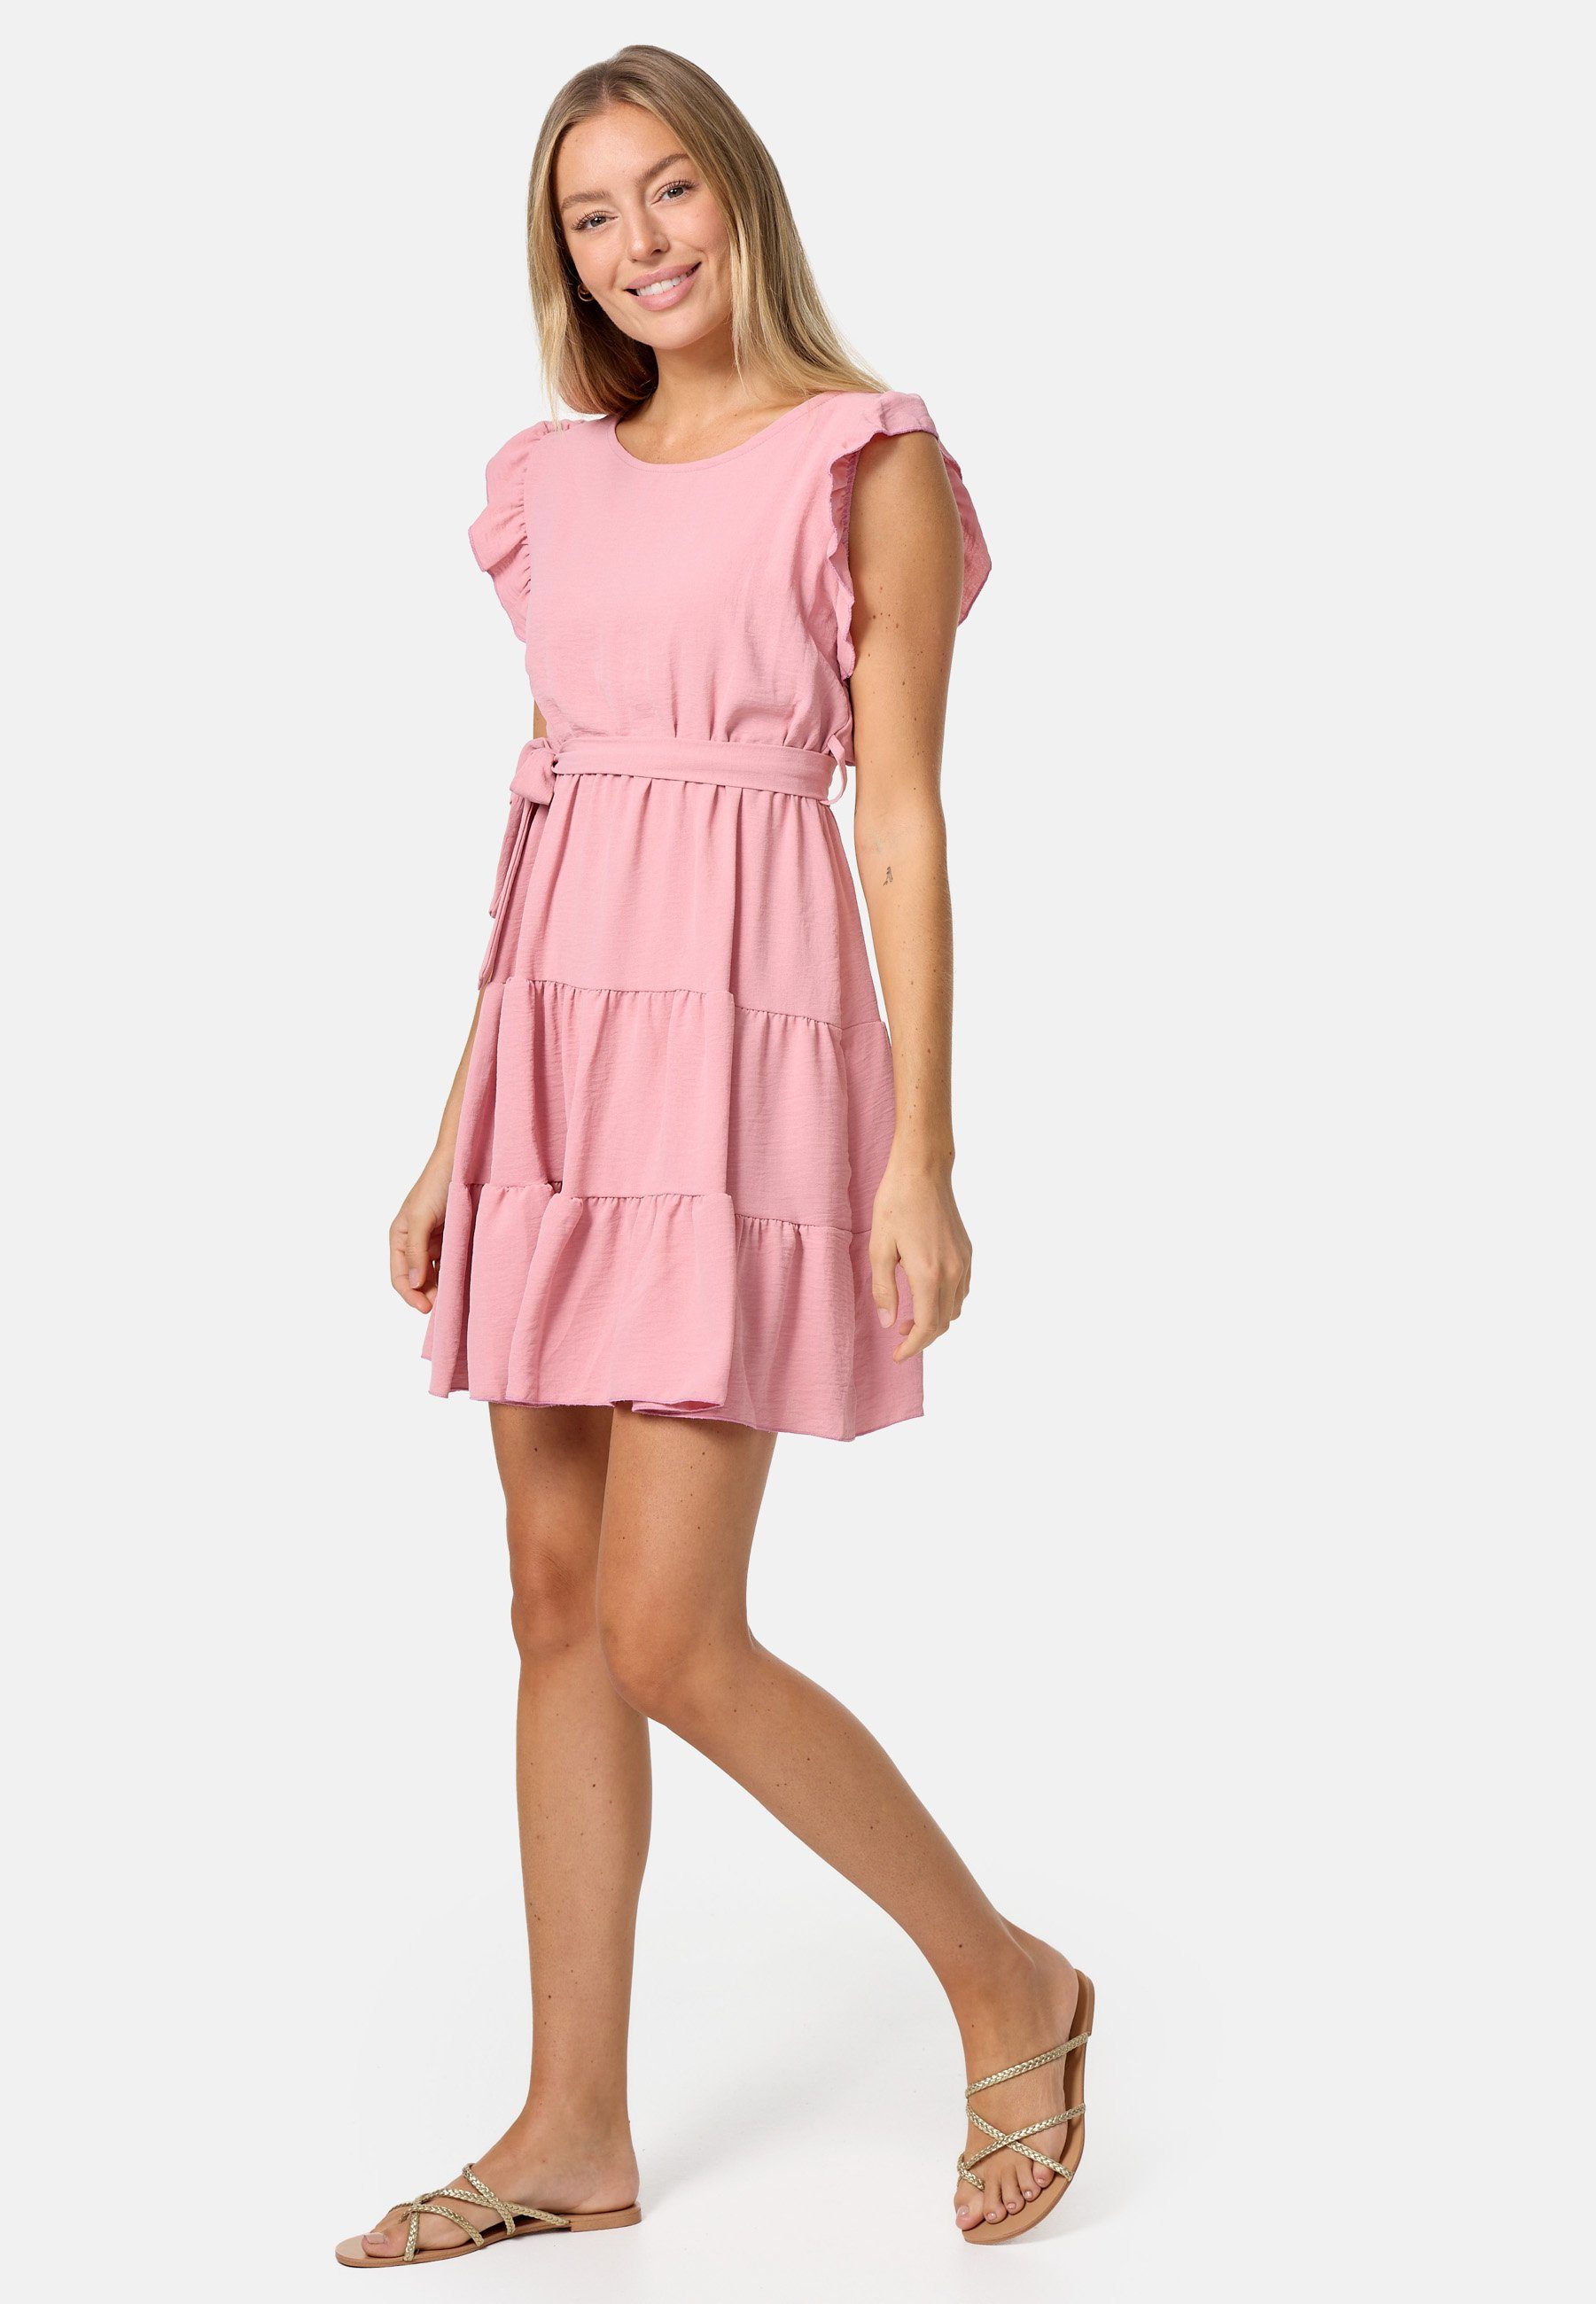 PM SELECTED Minikleid PM-27 (Sommerkleid Midi Kleid mit Rüschen in Einheitsgröße) Rosa